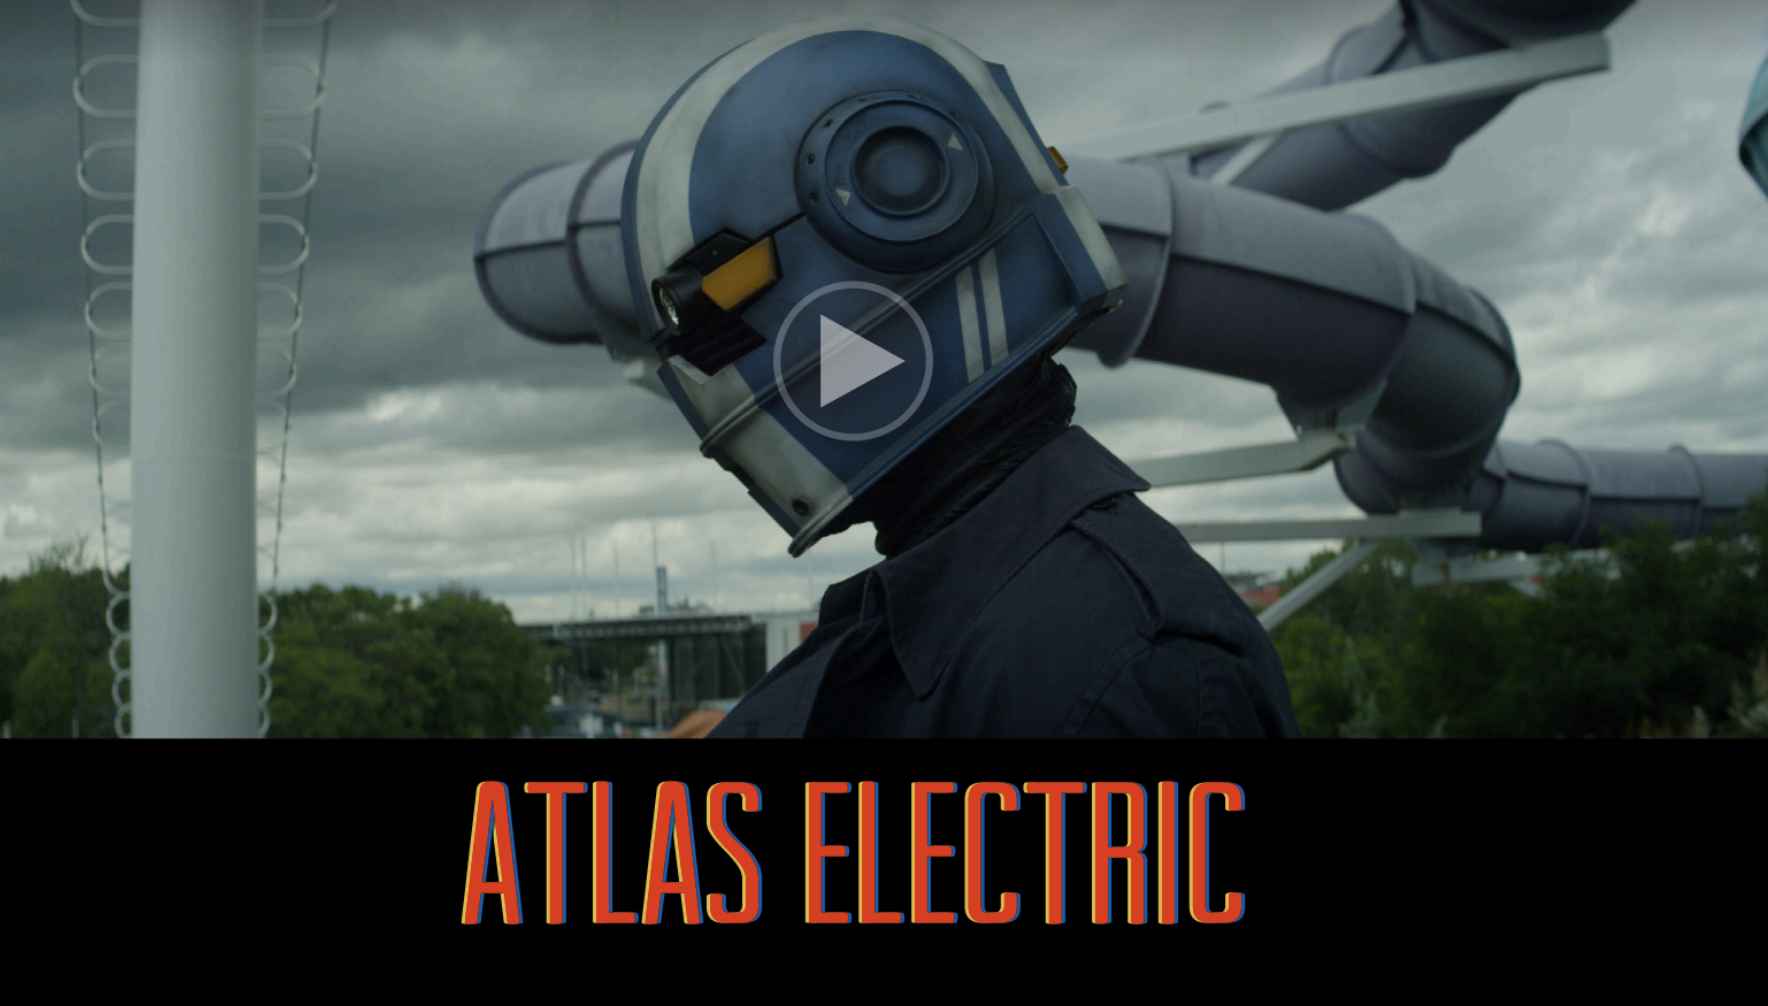 Altas Electric